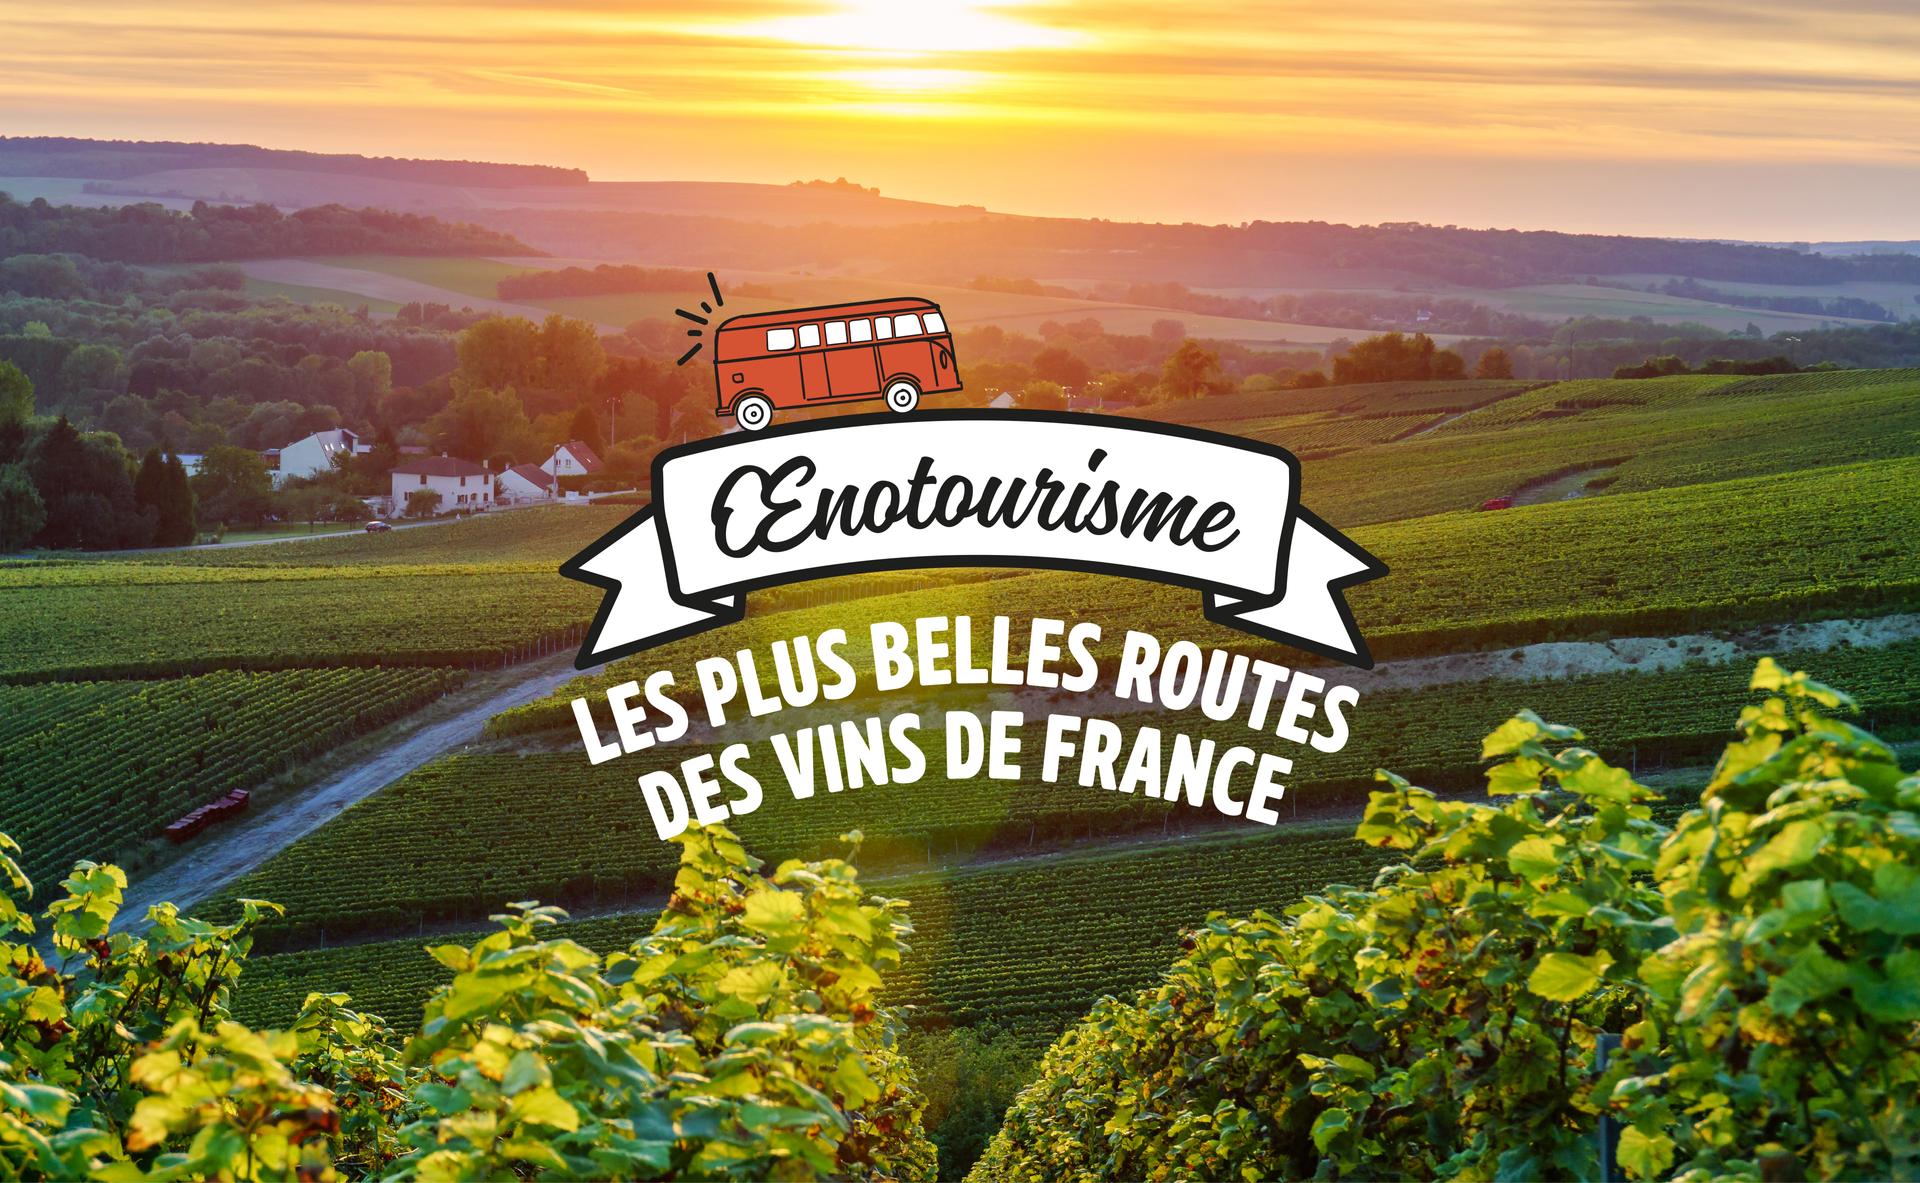 Les plus belles routes des vins en France